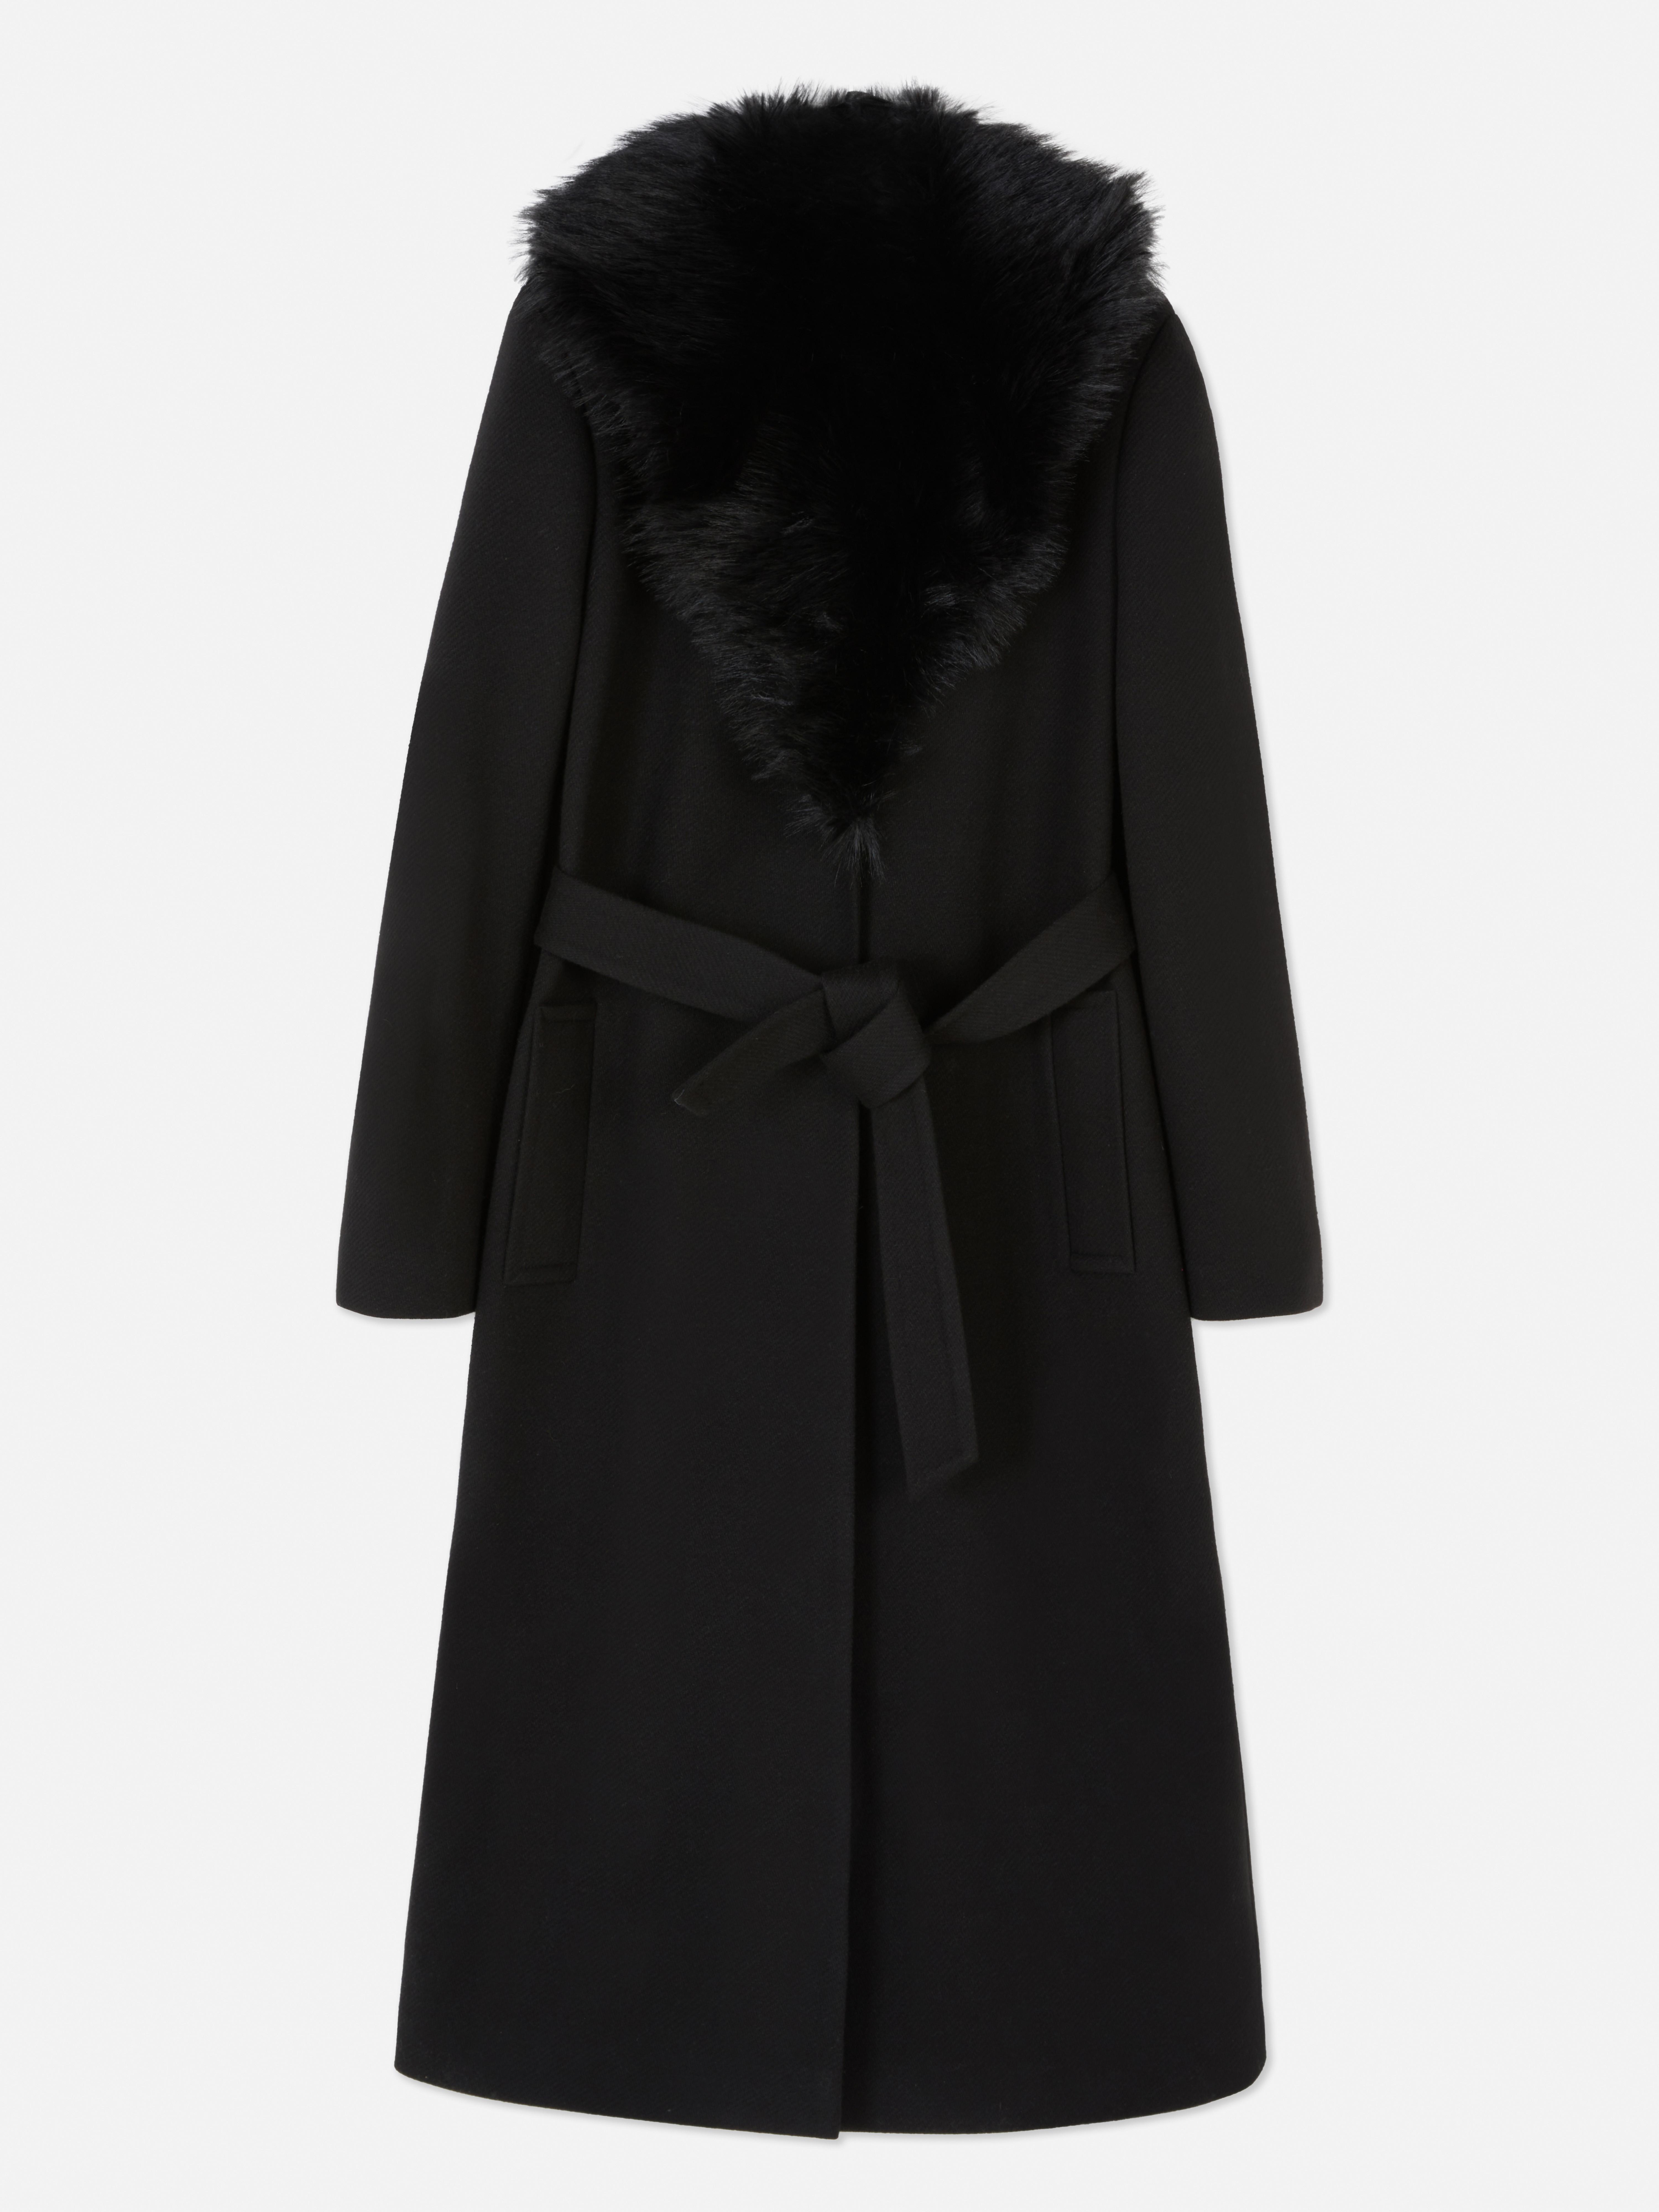 Abrigo con cuello de pelo | Abrigos y chaquetas para mujer | Ropa para mujer | Nuestra línea de moda femenina | Todos los productos Primark | Primark España